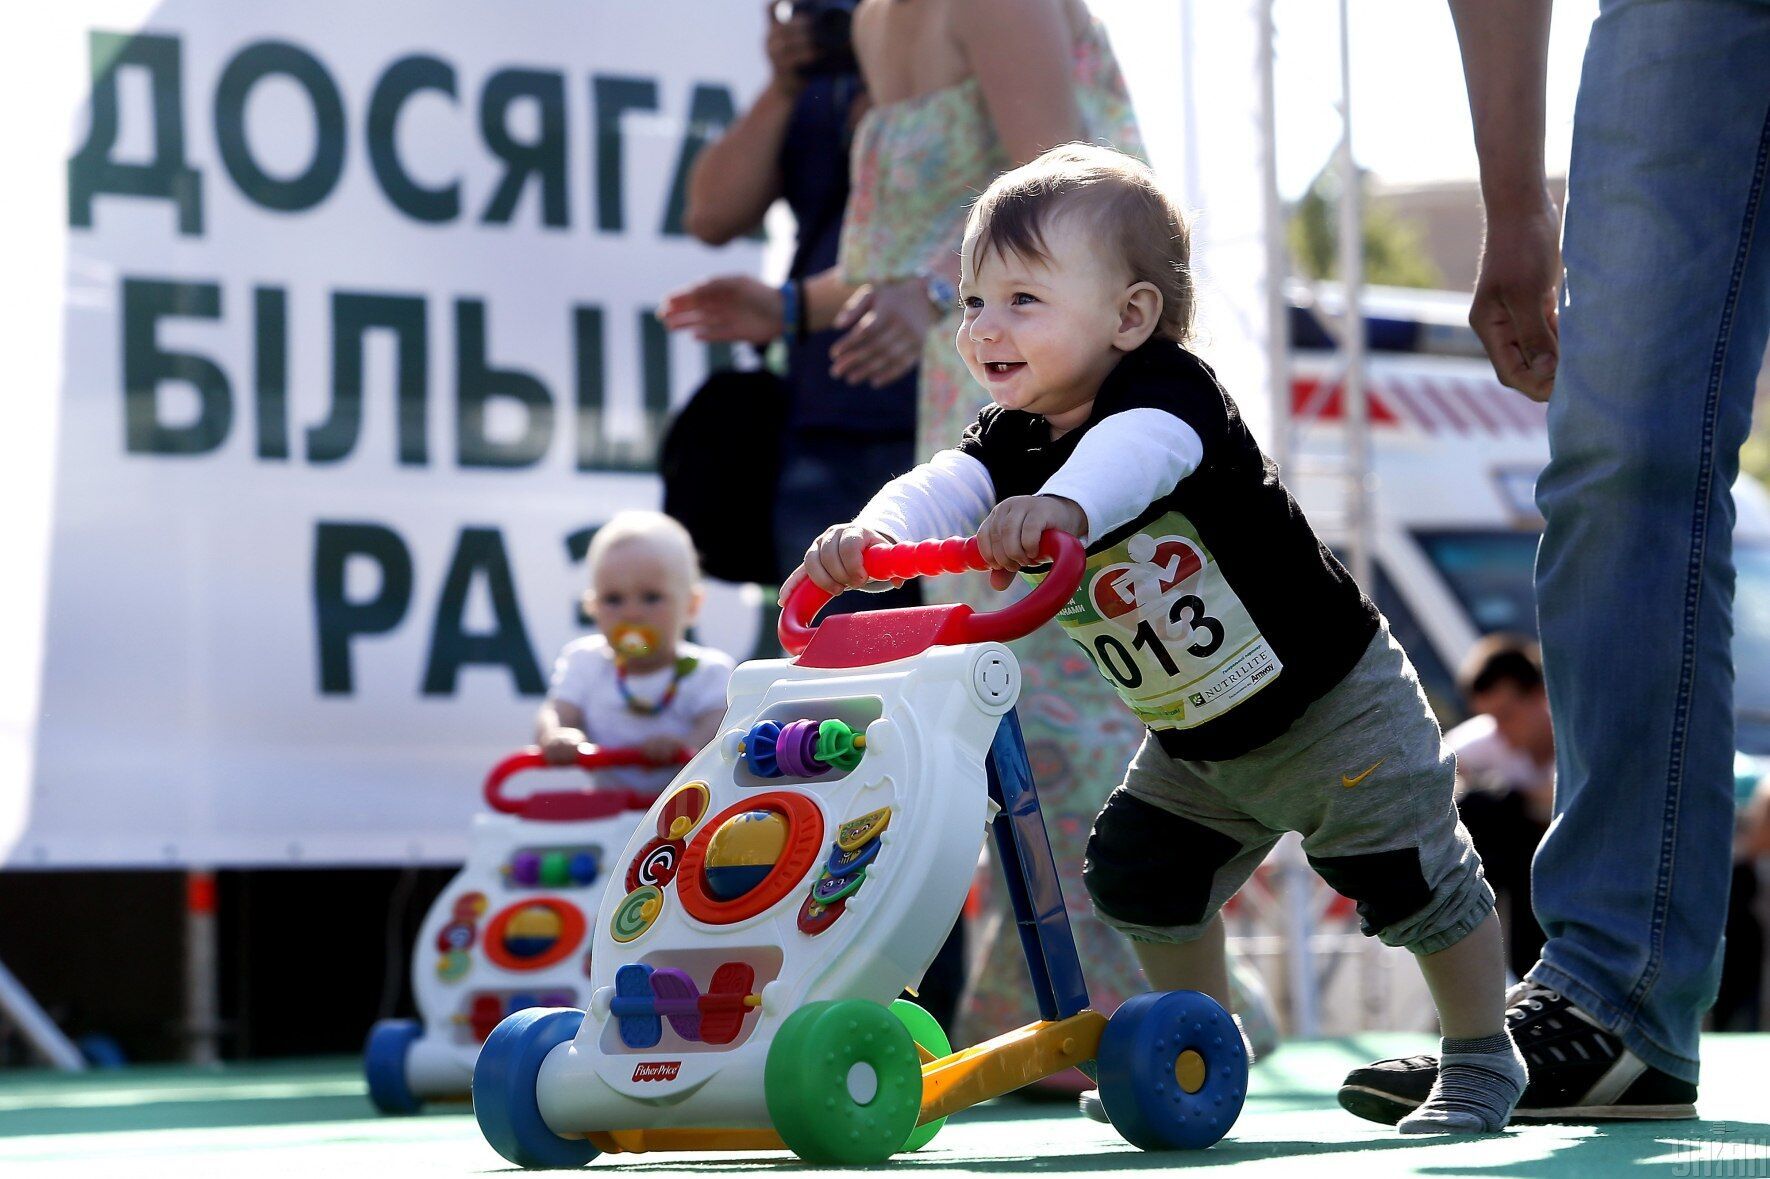 "Пробег в ходунках" в Киеве, 1 июня 2015 года